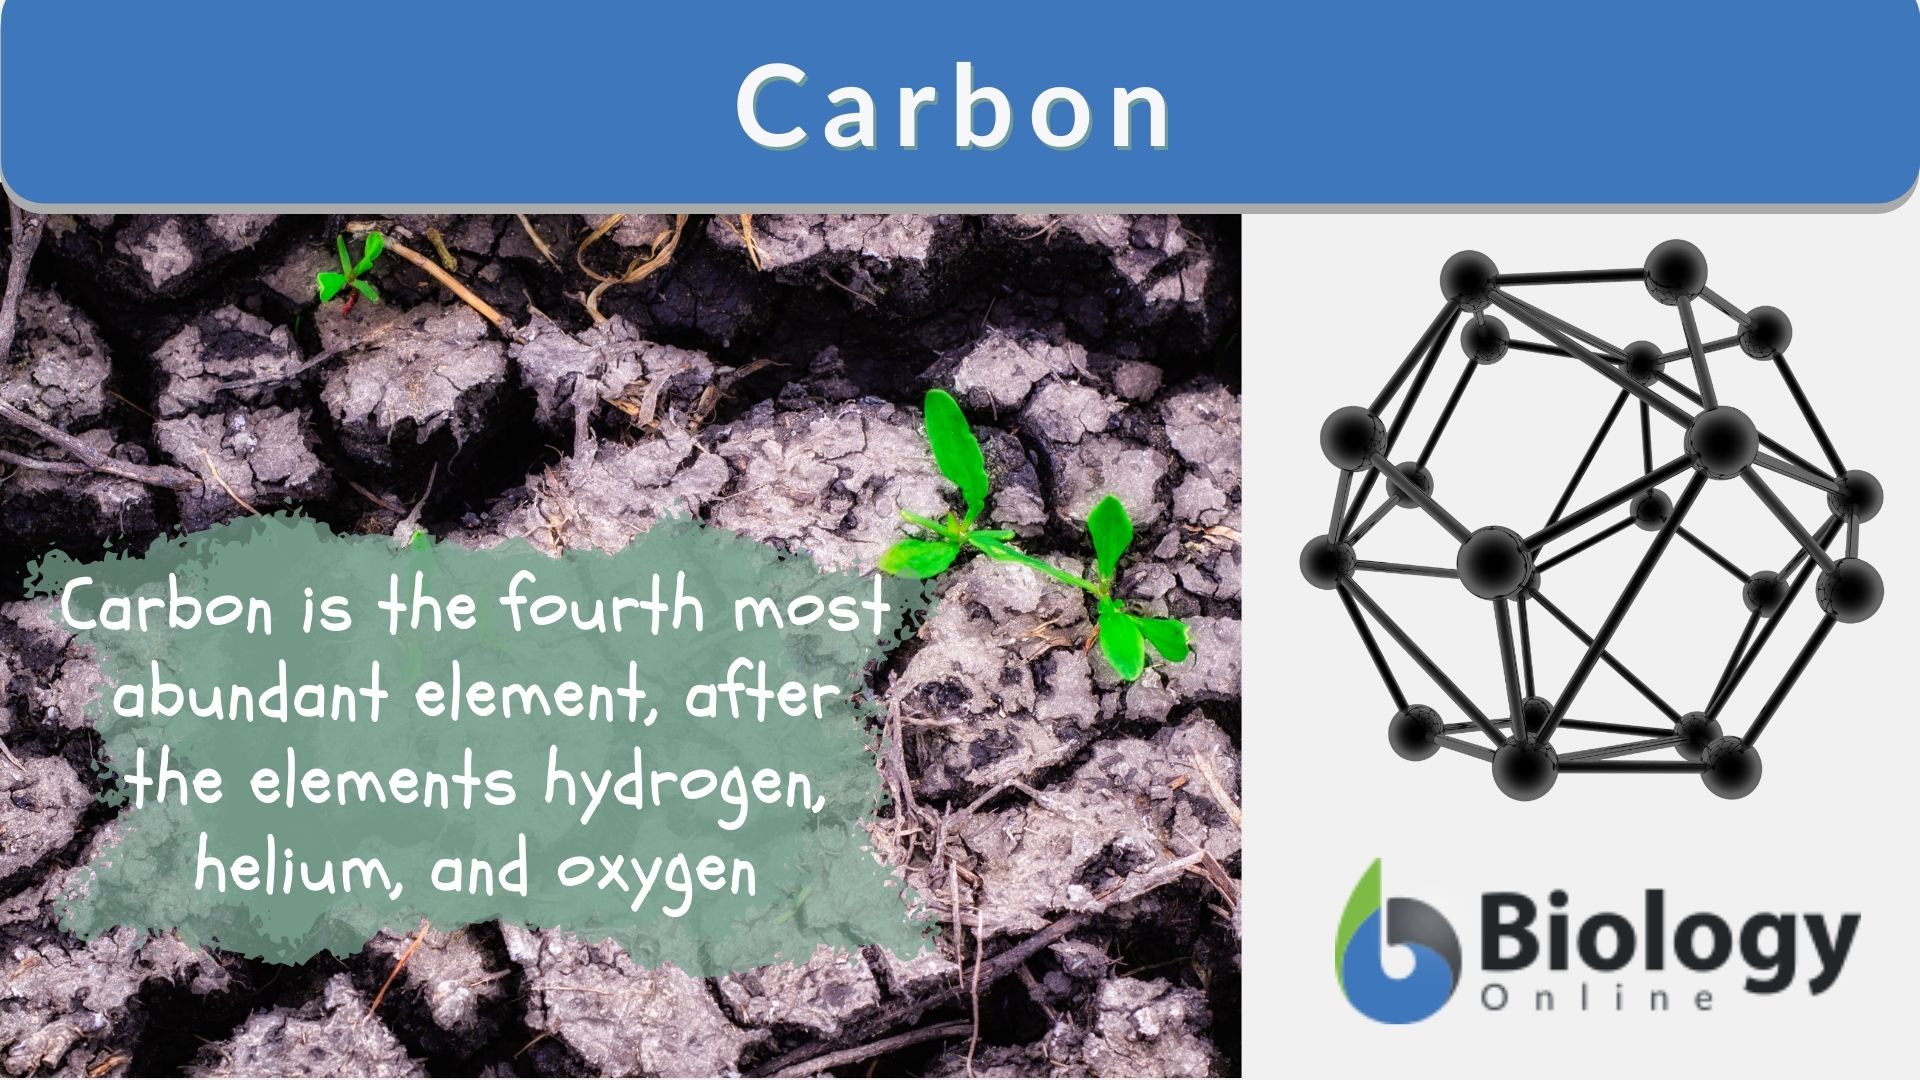 carbon 12.011